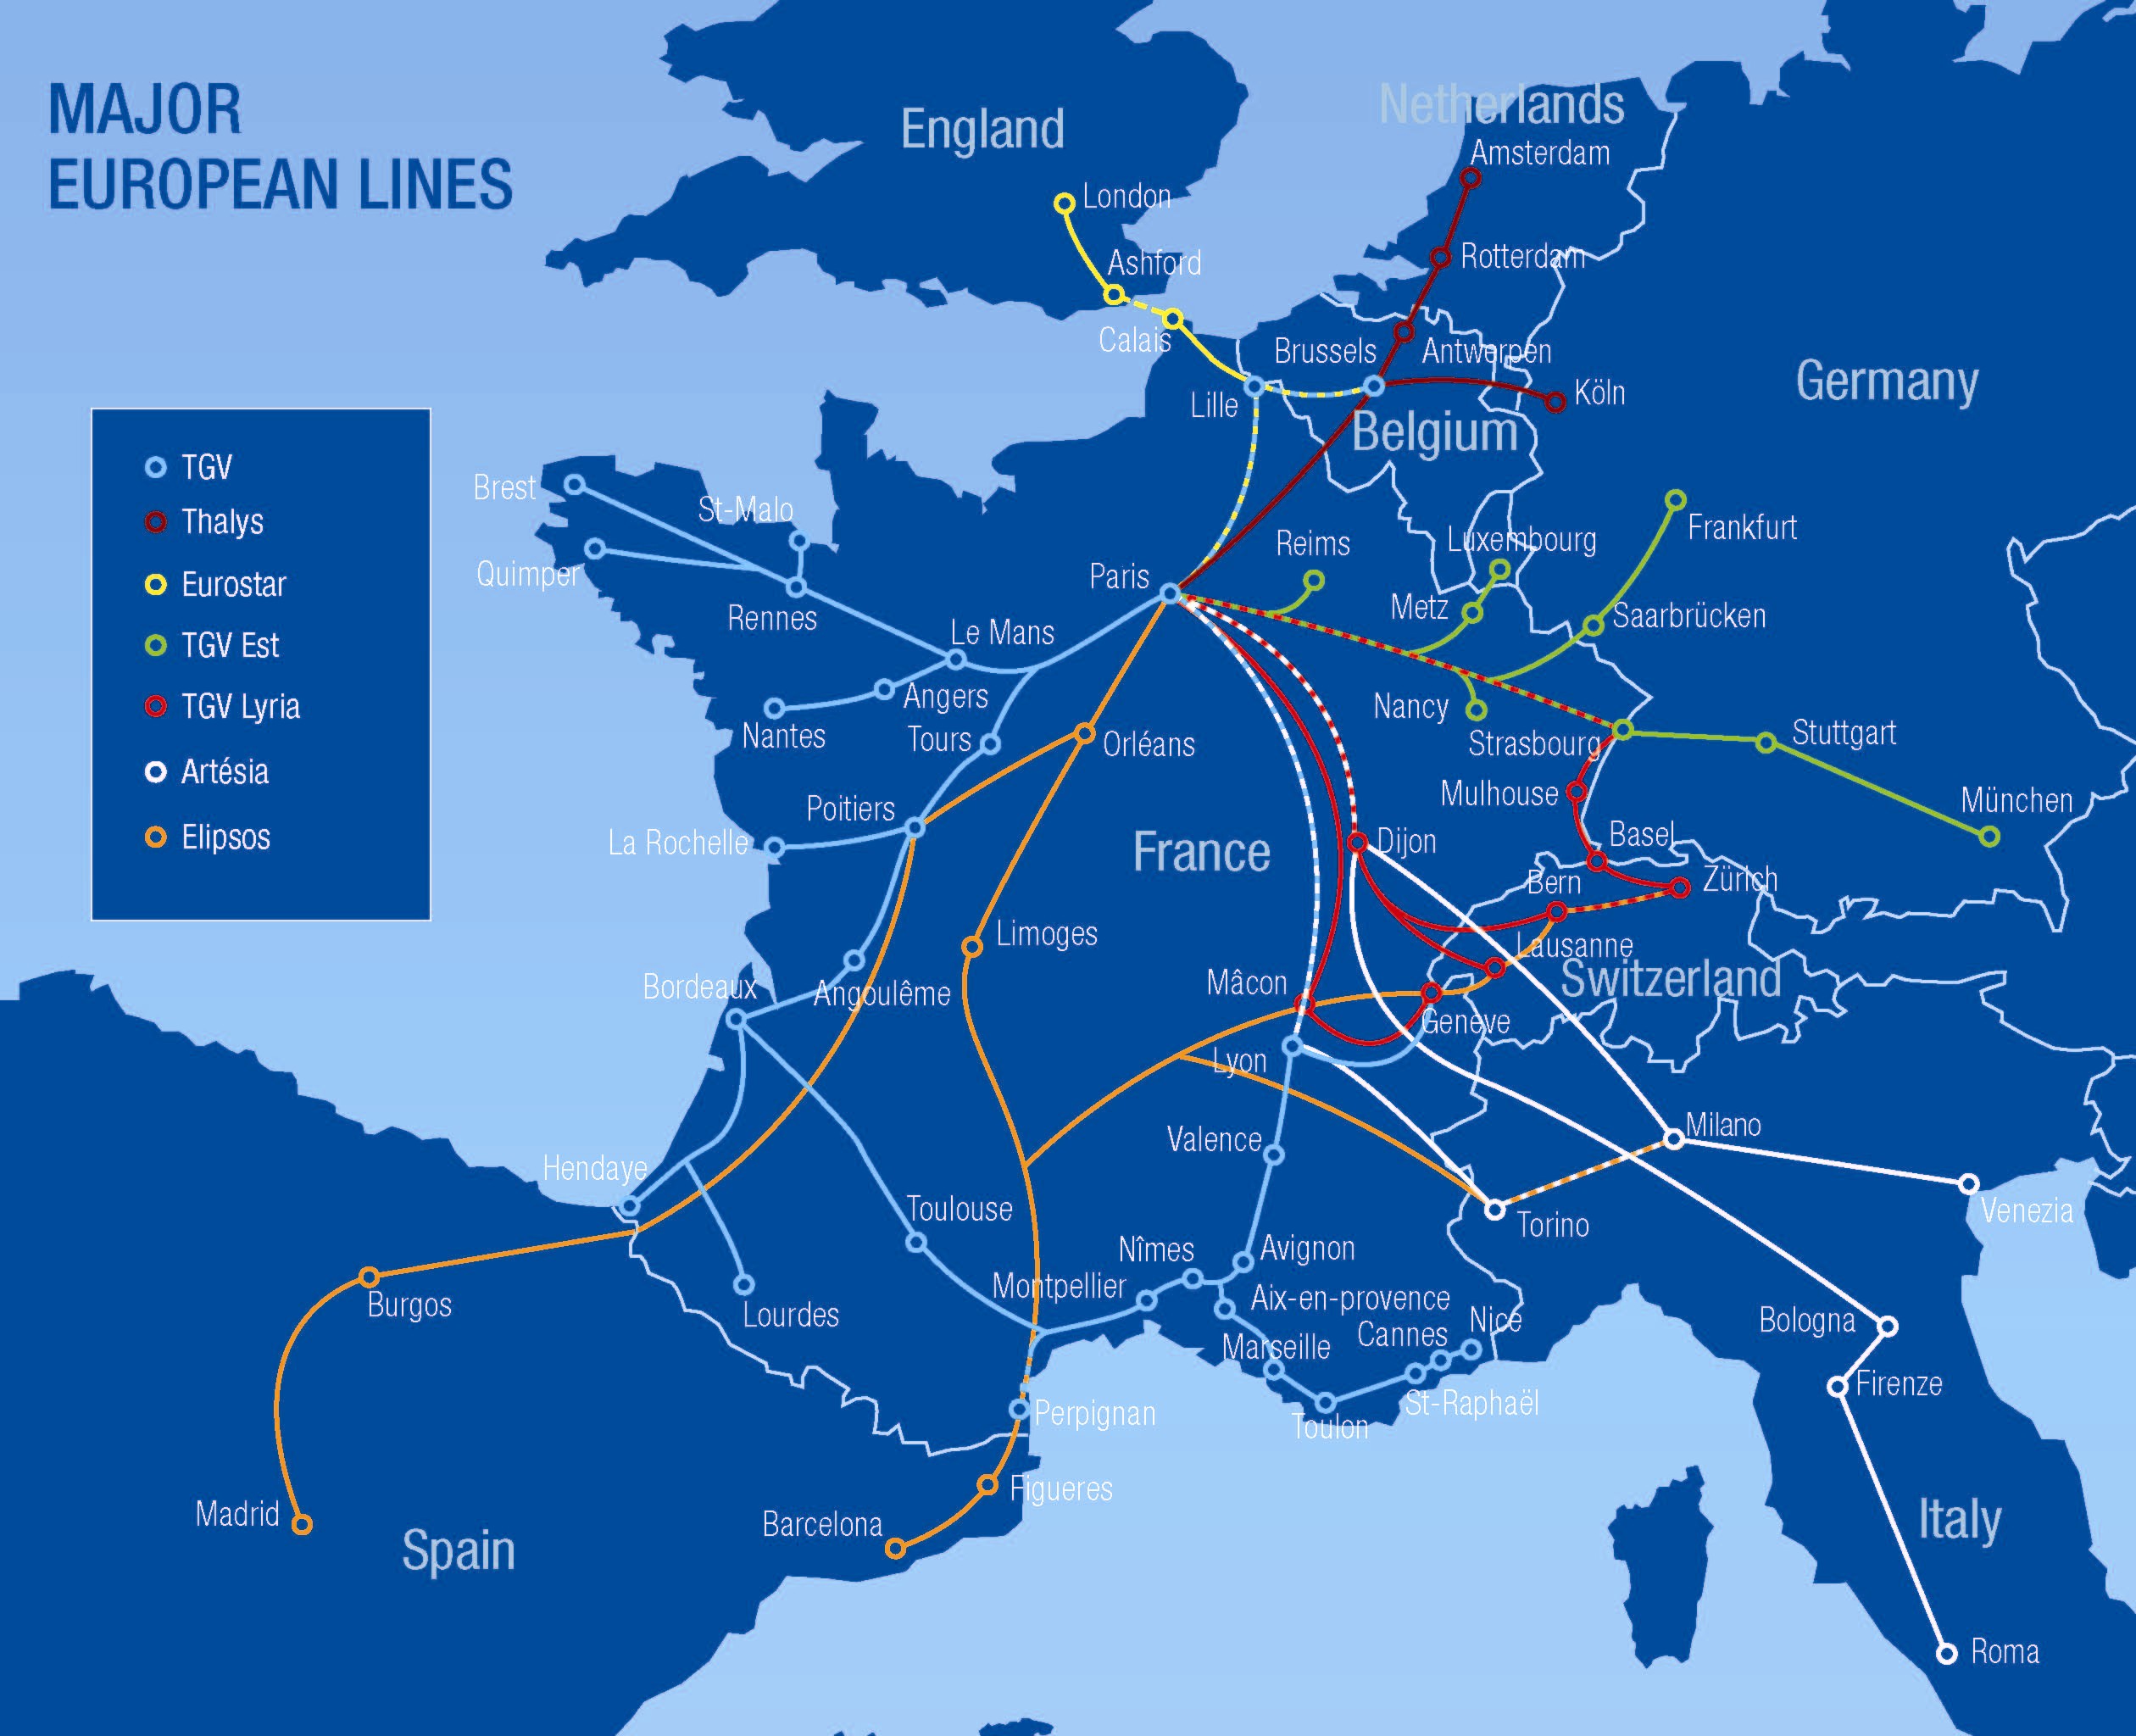 Tiempos de viaje en tramos de tren europeos